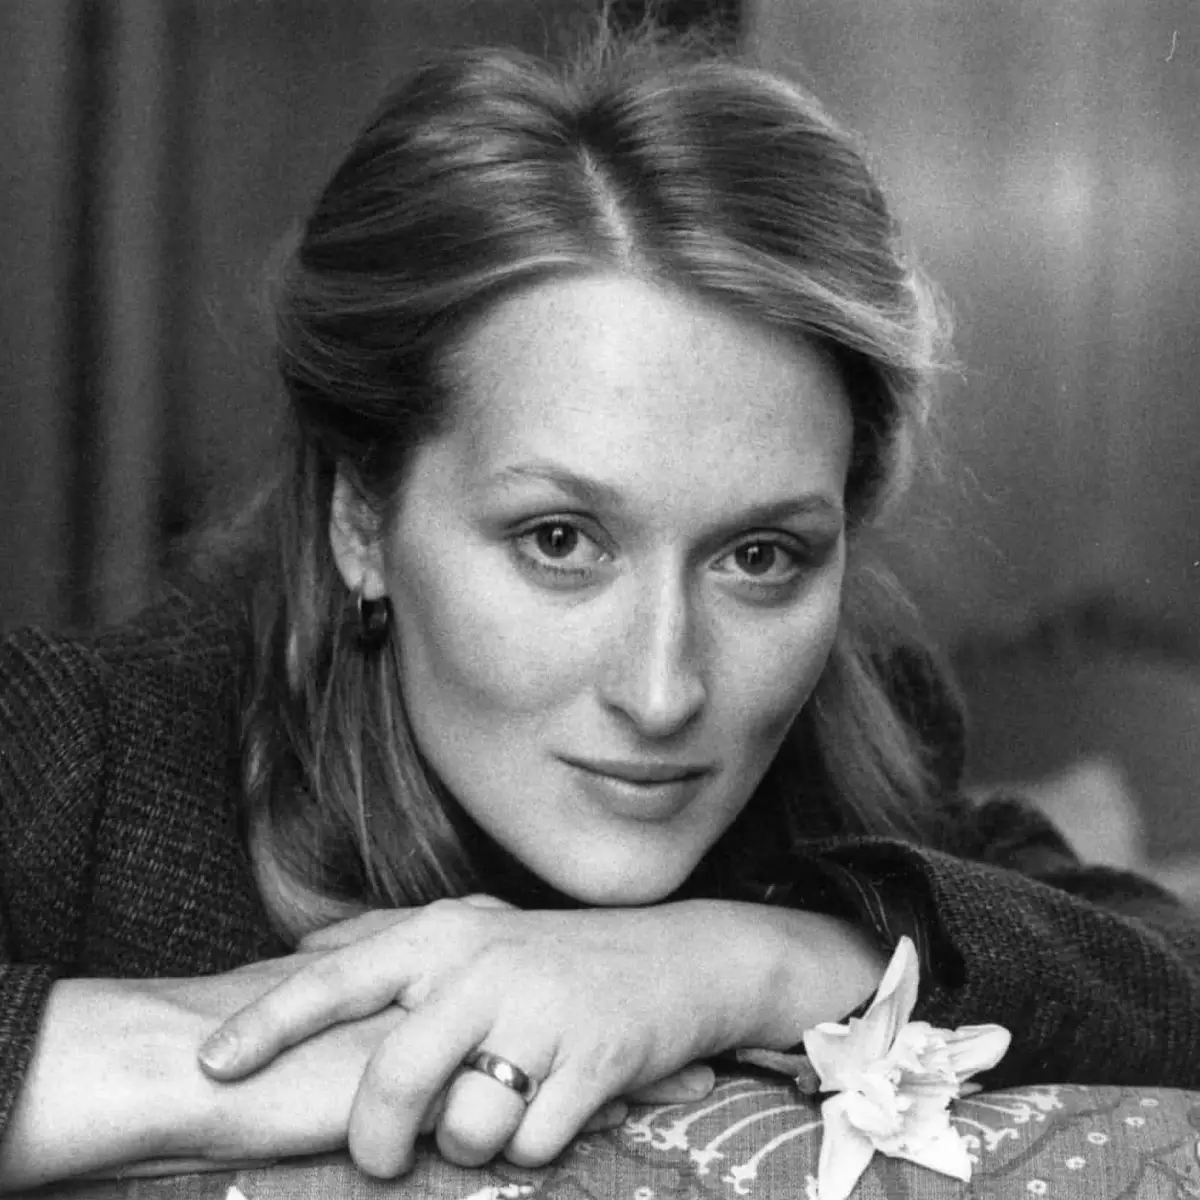 Meryl Streep fica com o Oscar de Melhor Atriz por 'A Dama de Ferro